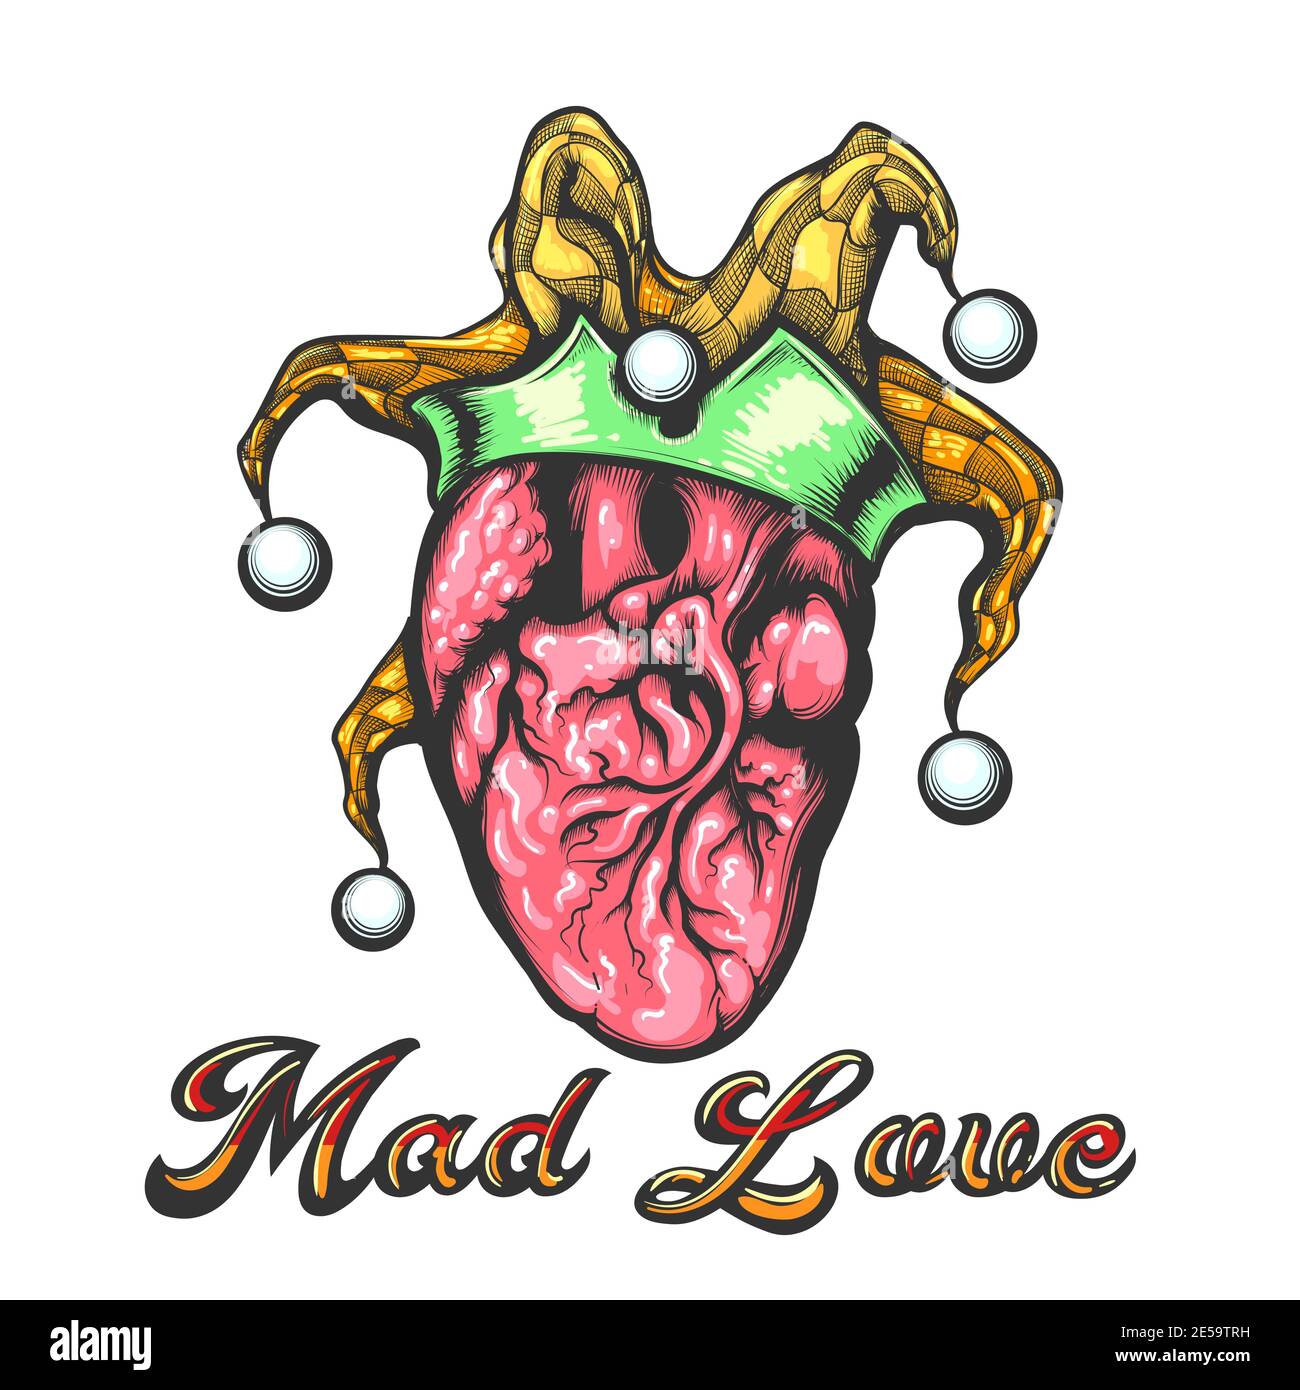 Tatouage de coeur humain avec chapeau de Jester et l'intitulé Mad Love Tattoo dessiné en style gravure. Illustration vectorielle. Illustration de Vecteur